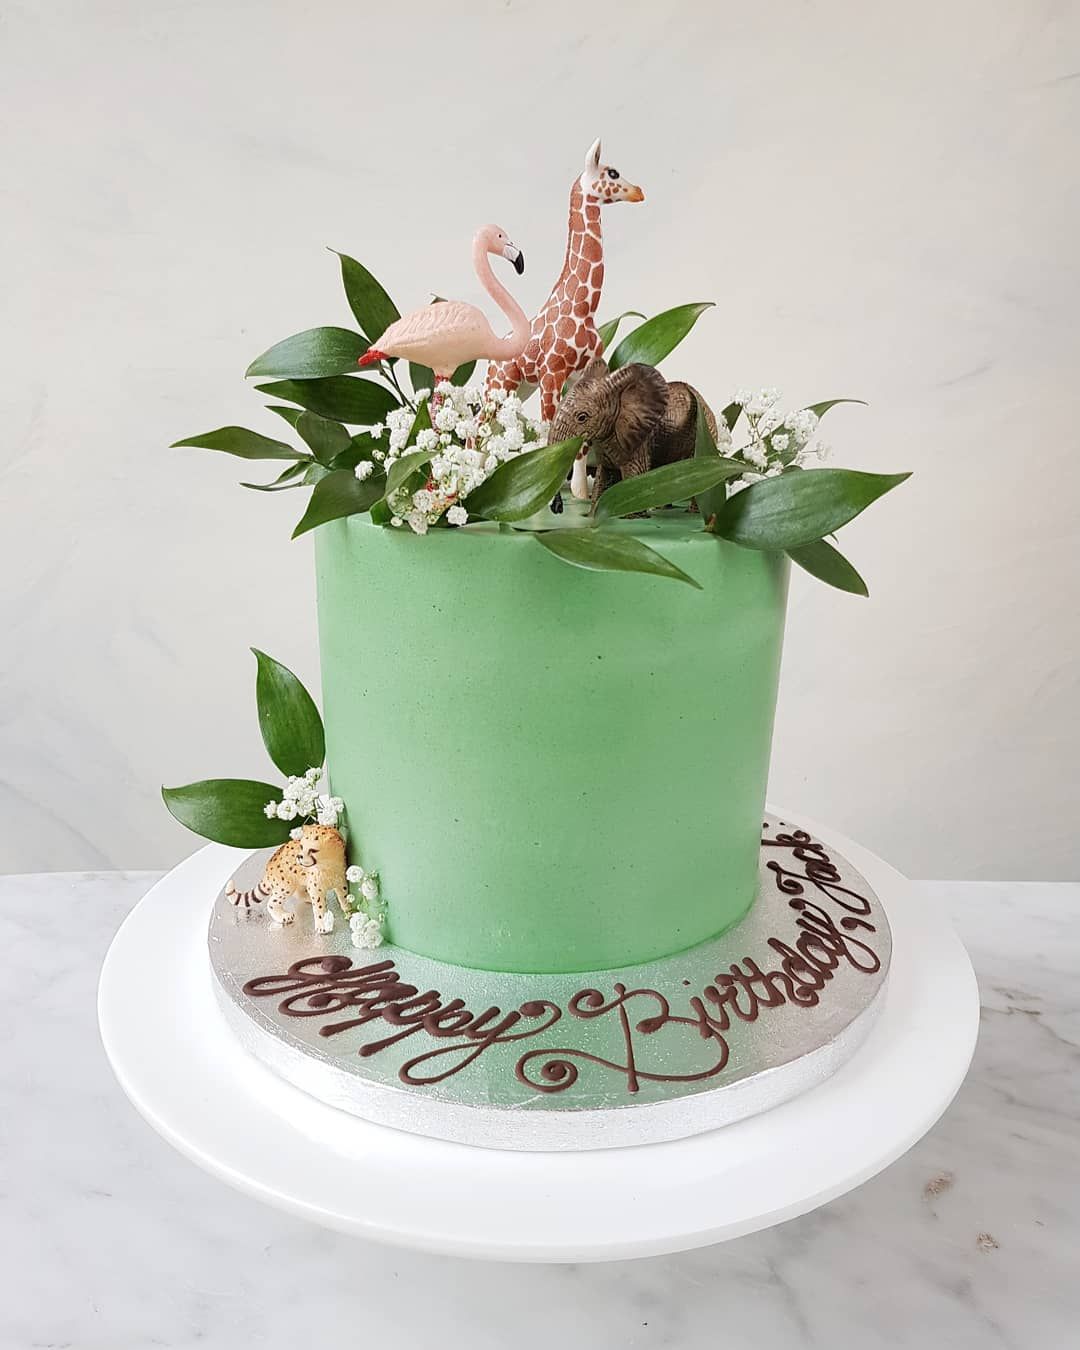  کیک تولد با تم سبز